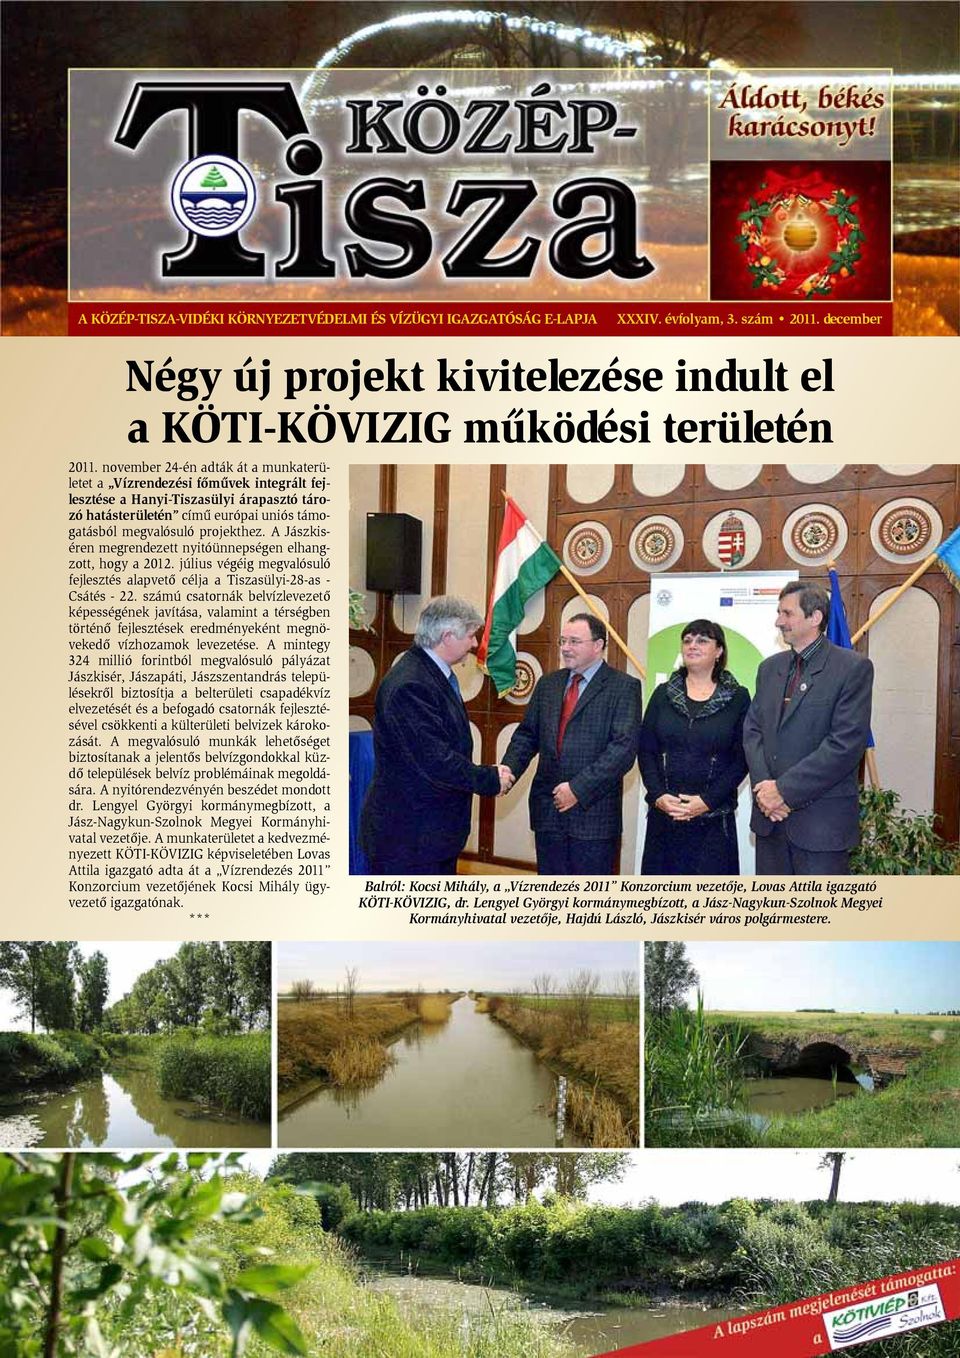 A Jászkiséren megrendezett nyitóünnepségen elhangzott, hogy a 2012. július végéig megvalósuló fejlesztés alapvetõ célja a Tiszasülyi-28-as - Csátés - 22.